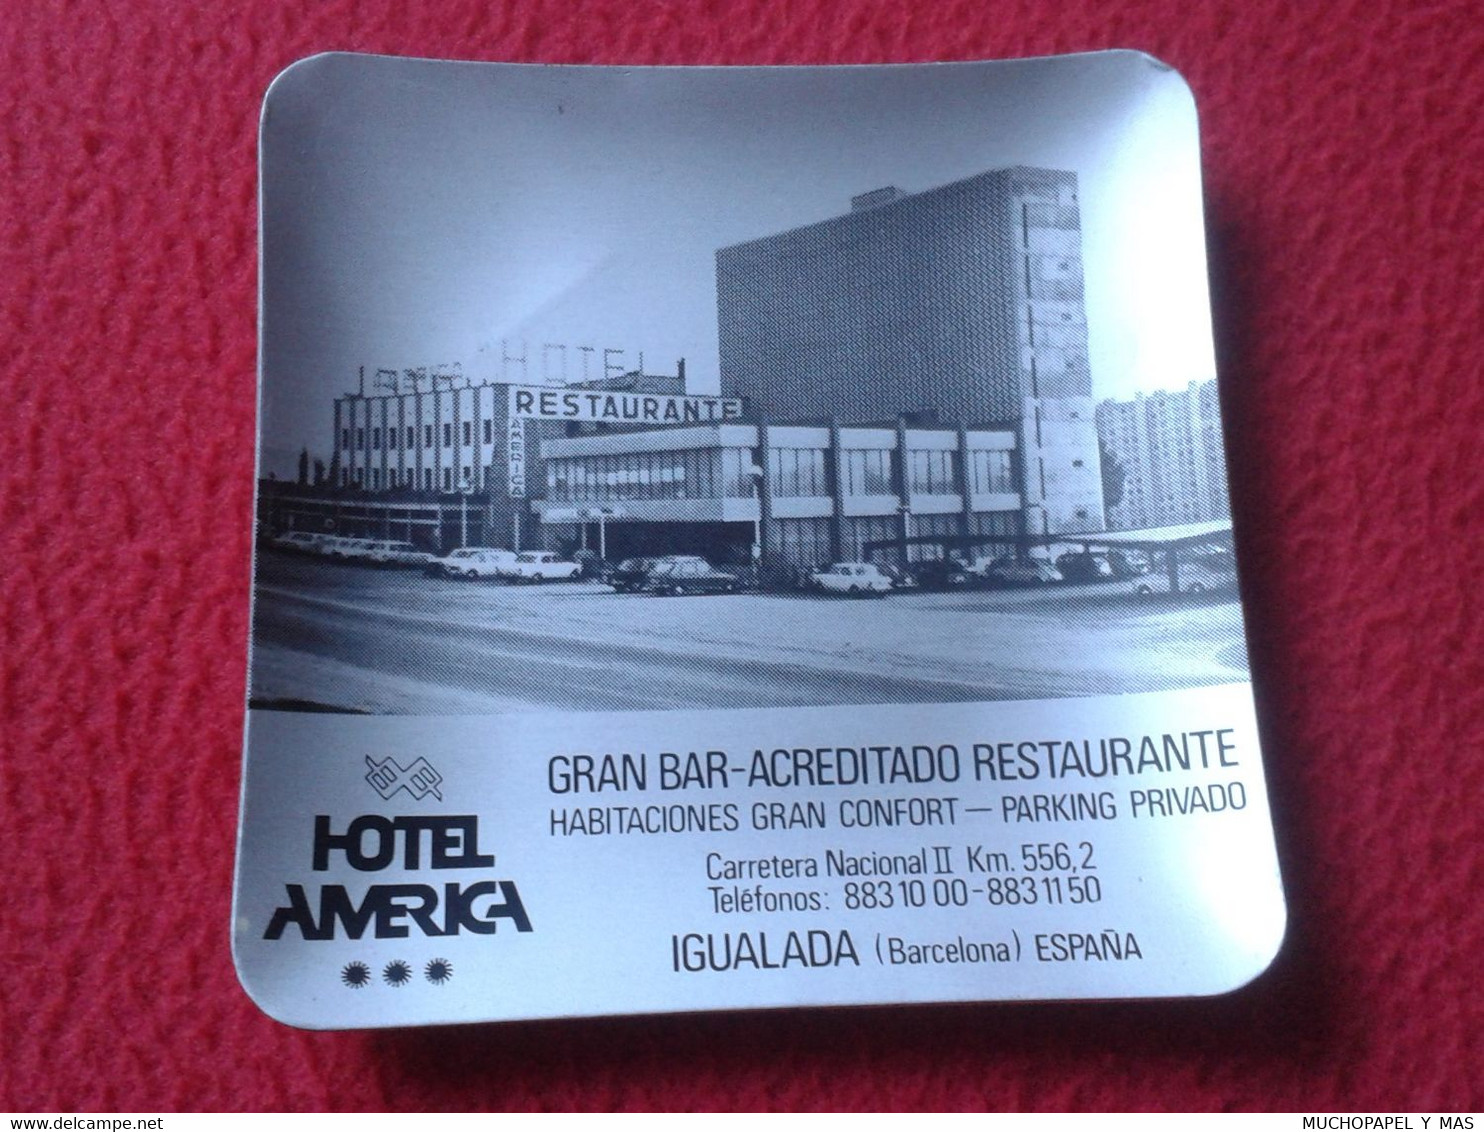 ASCHENBECHER ANTIGUO CENICERO ASHTRAY CENDRIER HOTEL AMÉRICA IGUALADA BARCELONA ESPAÑA GRAN BAR RESTAURANTE RESTAURANT.. - Metal